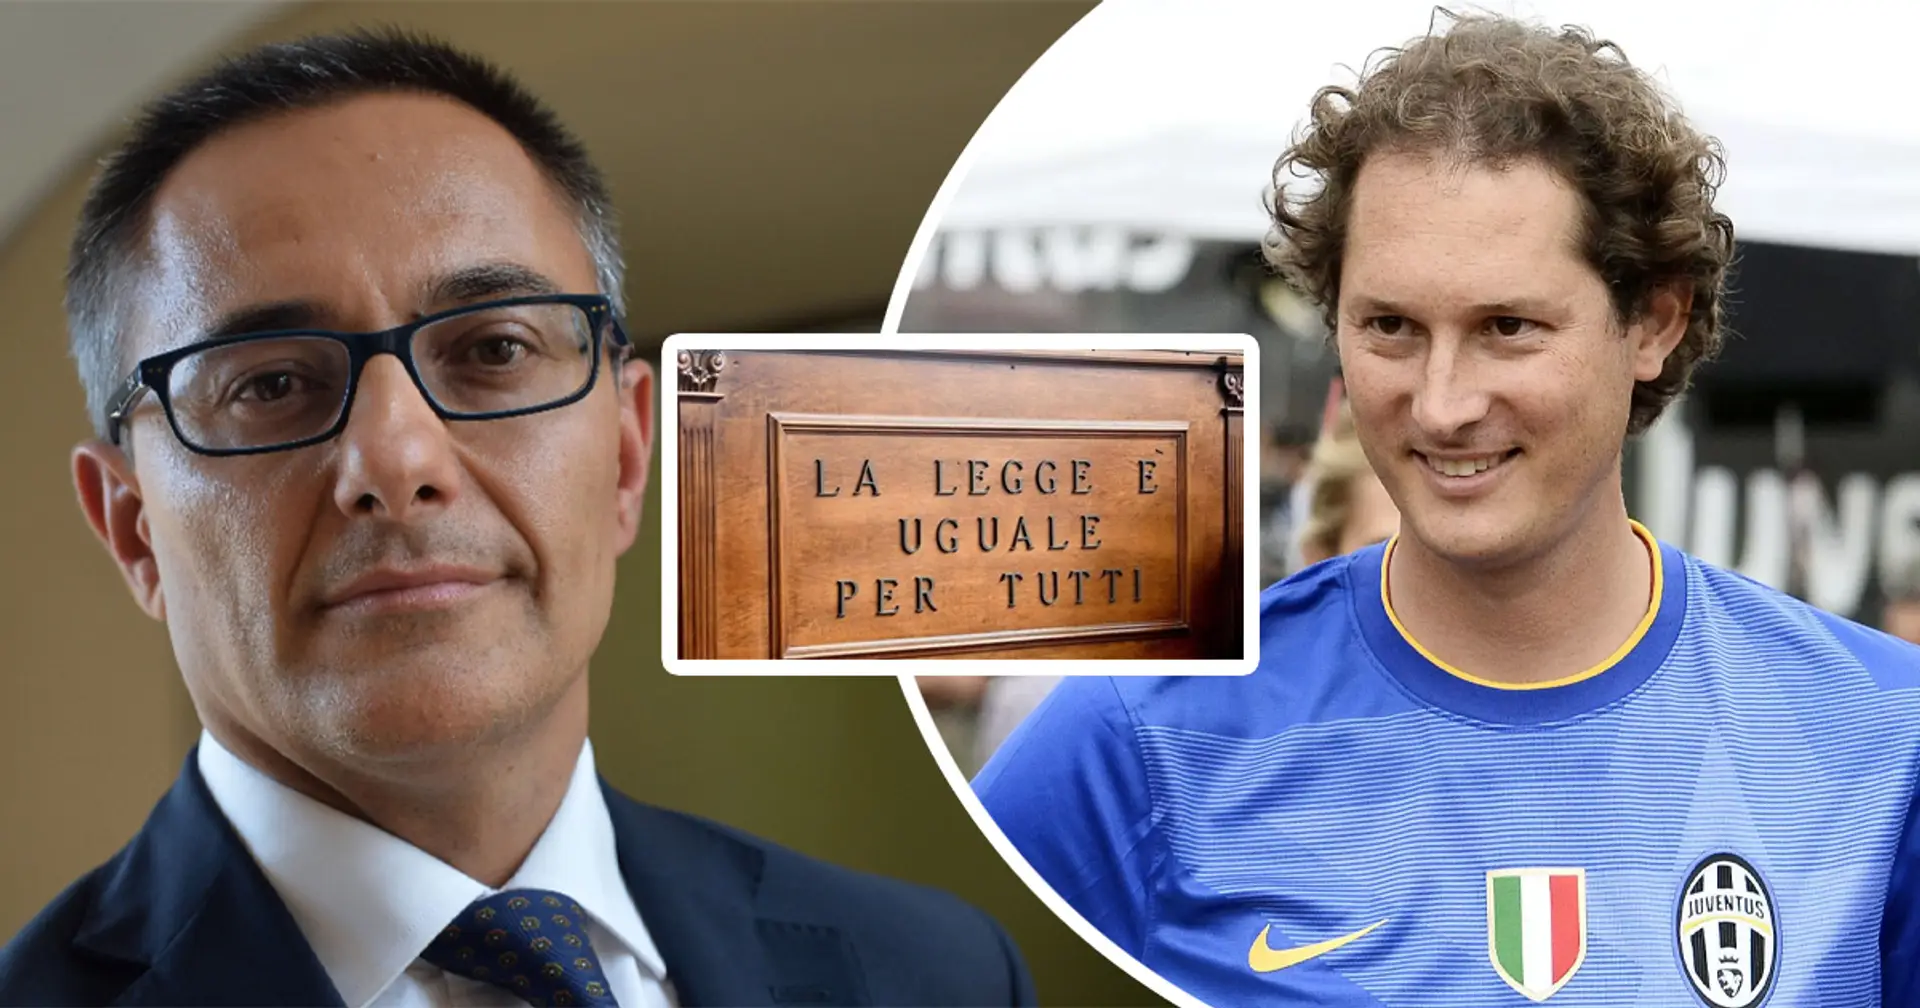 Chirico svela i termini dell'accordo "segreto" tra FIGC e Juventus per le plusvalenze: la sentenza CAF conferma i sospetti